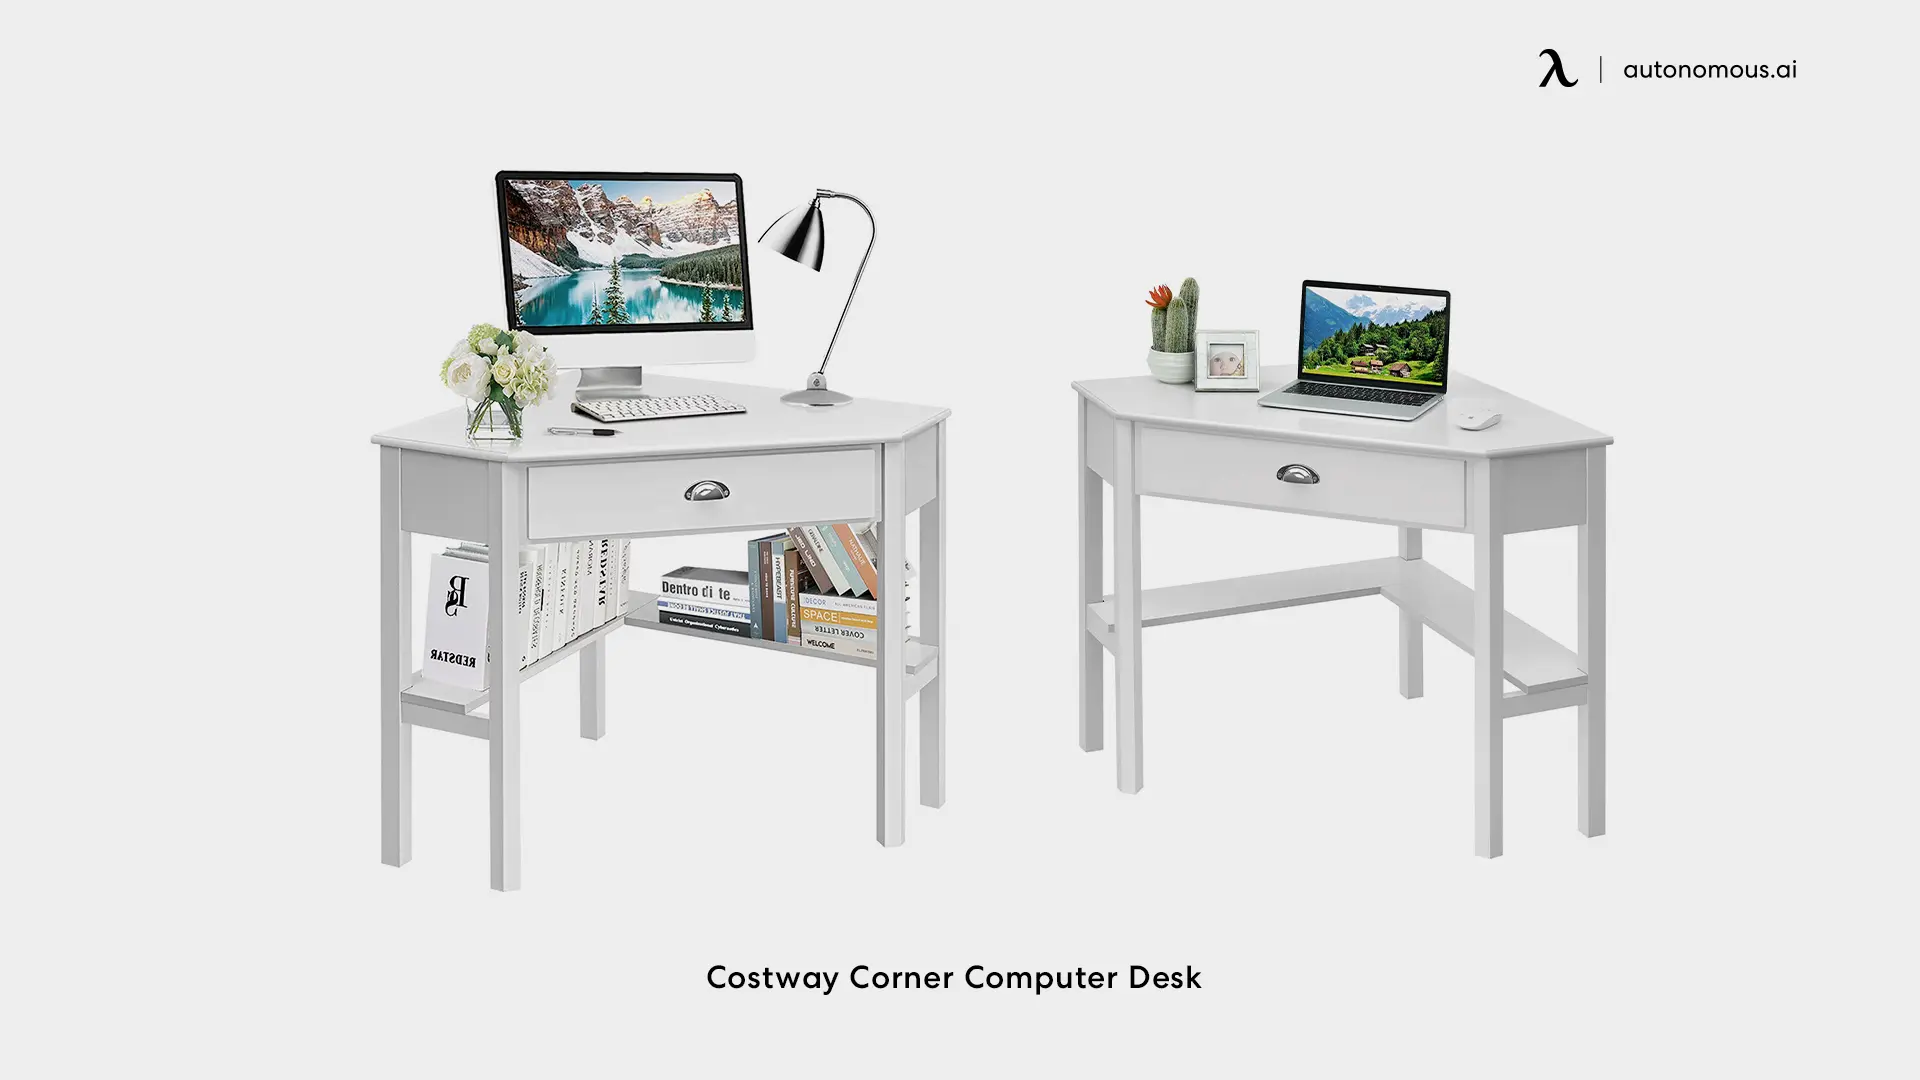 Costway Corner Computer Desk